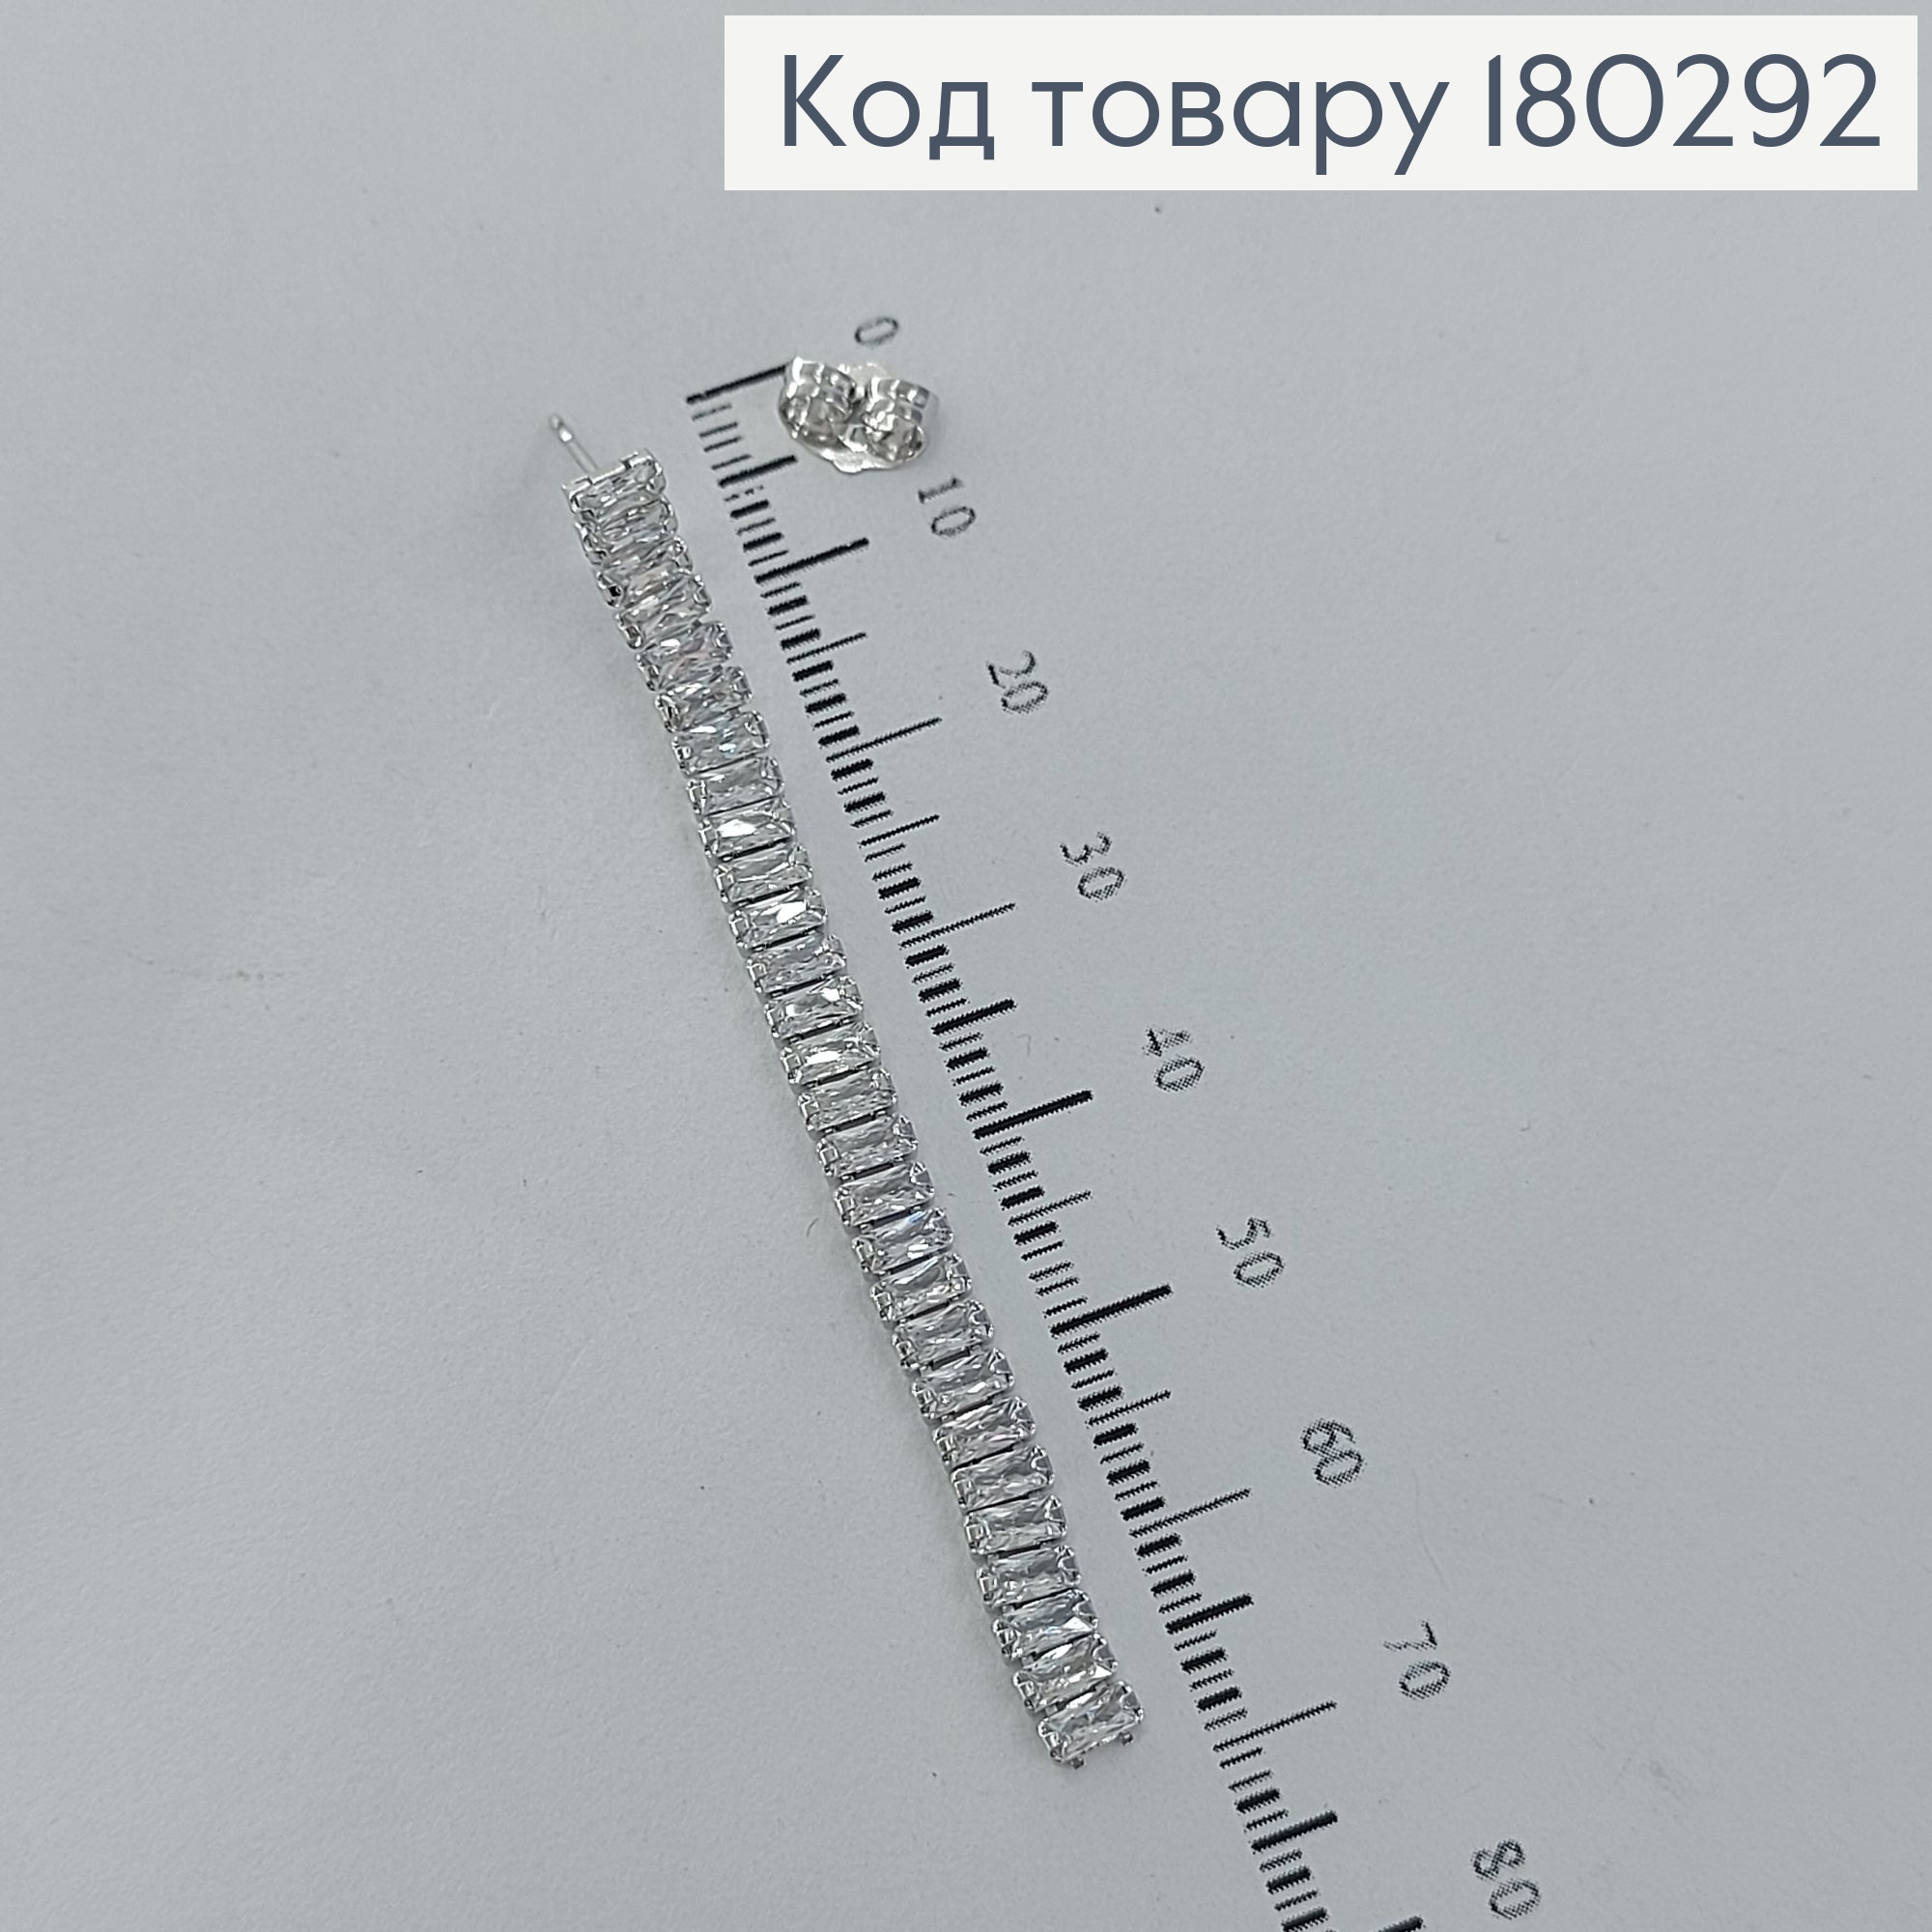 Сережки гвіздки підвіски з камінцями родіроване медзолото Xuping 180292 фото 2